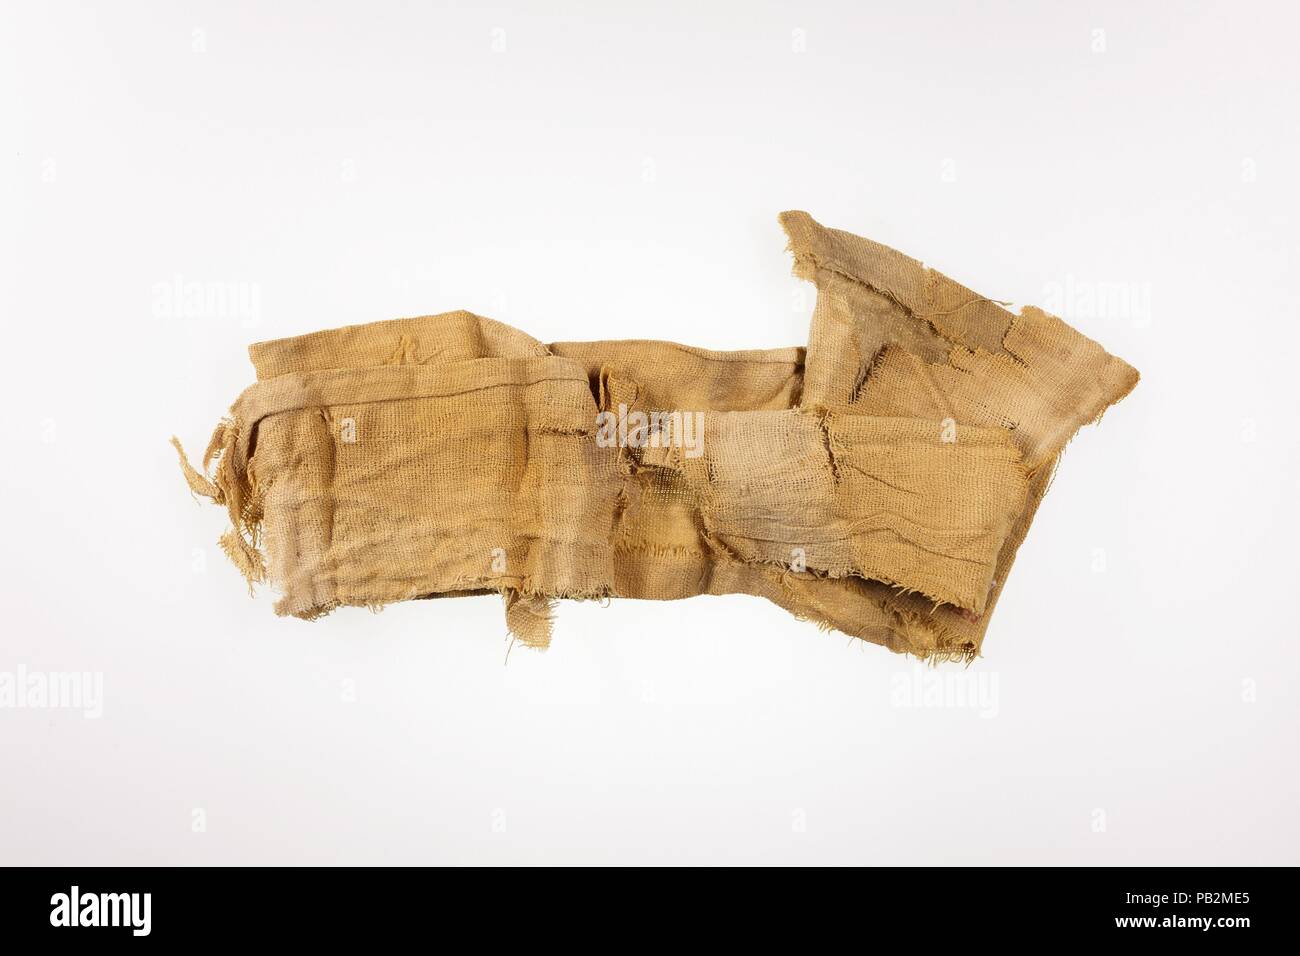 Der Schreiber Tuch. Abmessungen: Nicht gemessen. Dynastie: Dynasty 26-30. Datum: 664-332 v. Chr.. In den Schmutz von den Vorplatz der ein Grab in Theben entdeckt, dieser Gruppe von Objekten würde gehörte zu einem Schreiber haben. Hier finden Sie einen Holzboden (enthält eine unbenutzte Kuchen der schwarze Tinte) (a) und die drei Reed Bürsten (b-d); ein Strang der Gewinde (e); mehrere Blatt Papyrus (h 1-3, i); einen String zum Binden der Papyrus (f); andere stringto binden den Papyrus zu der Palette (g); und Leinen Tuch, das um den ganzen Satz (j) gewickelt wurde. Museum: Metropolitan Museum of Art, New York, USA. Stockfoto